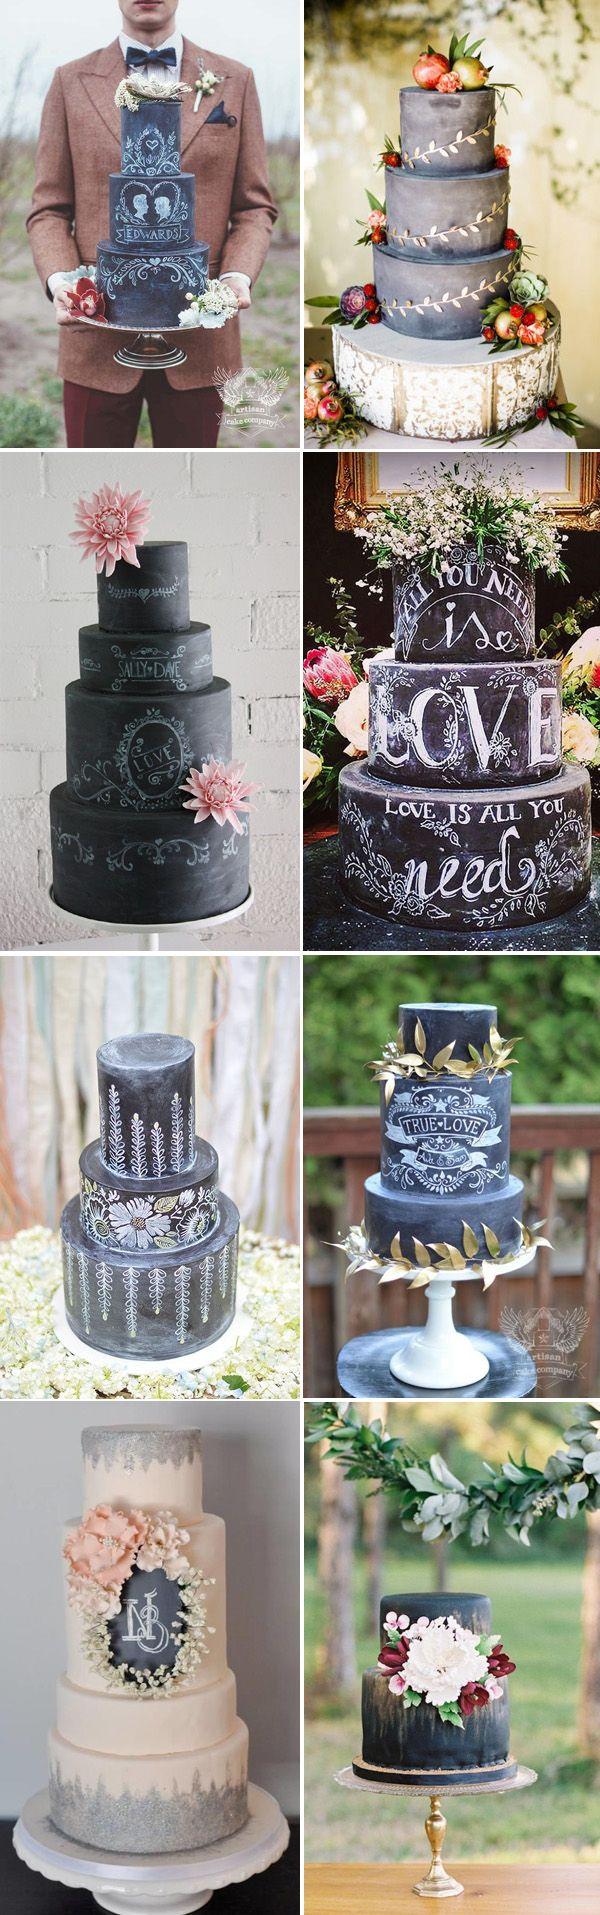 زفاف - 58 Creative Wedding Cake Ideas (with Tips)